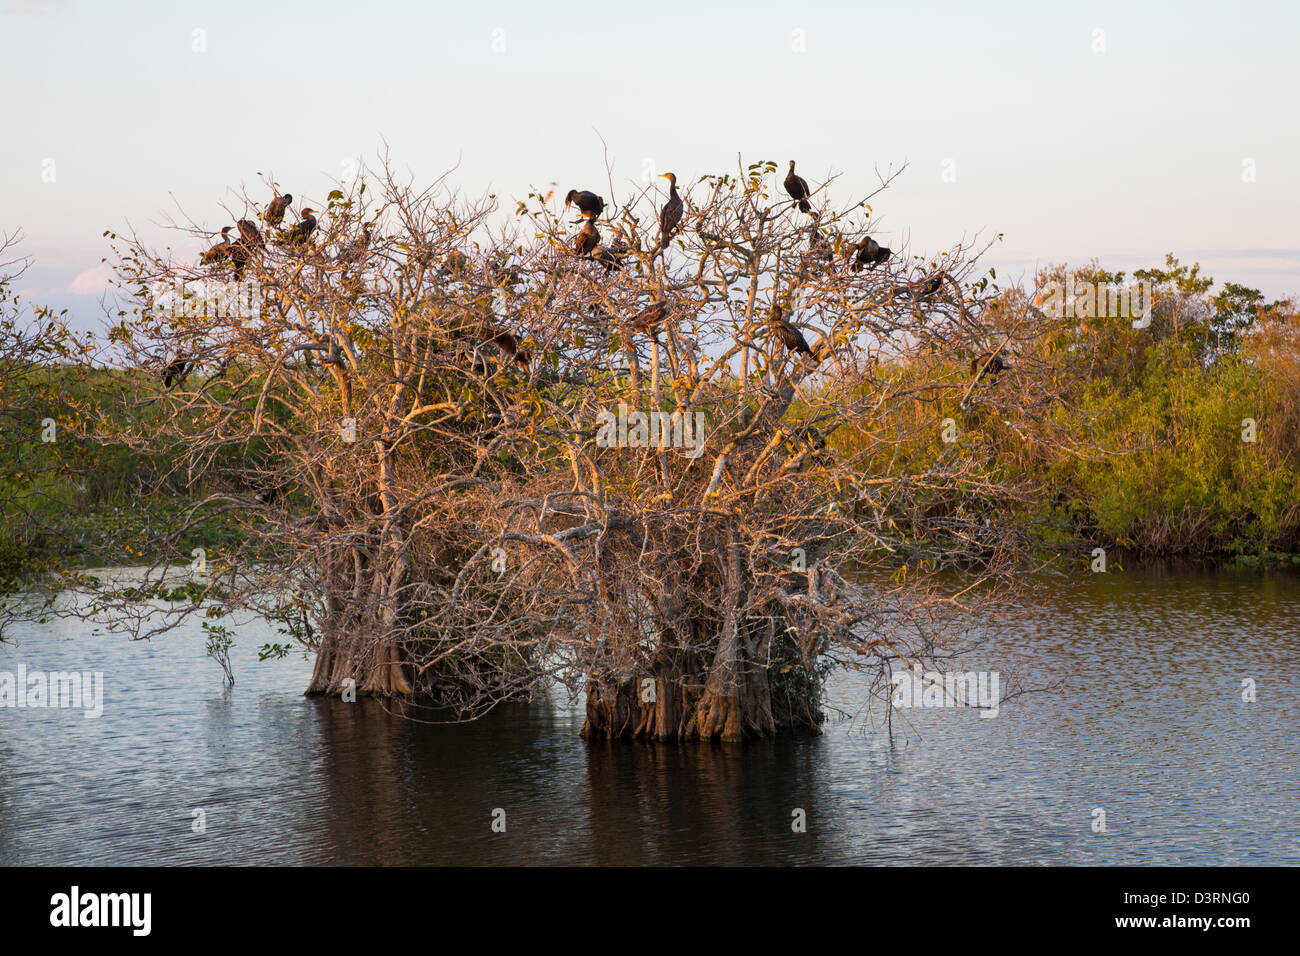 Les oiseaux dans les arbres au bord de l'anhinga Trail, au Royal Palm Visitor Center dans le parc national des Everglades en Floride Banque D'Images